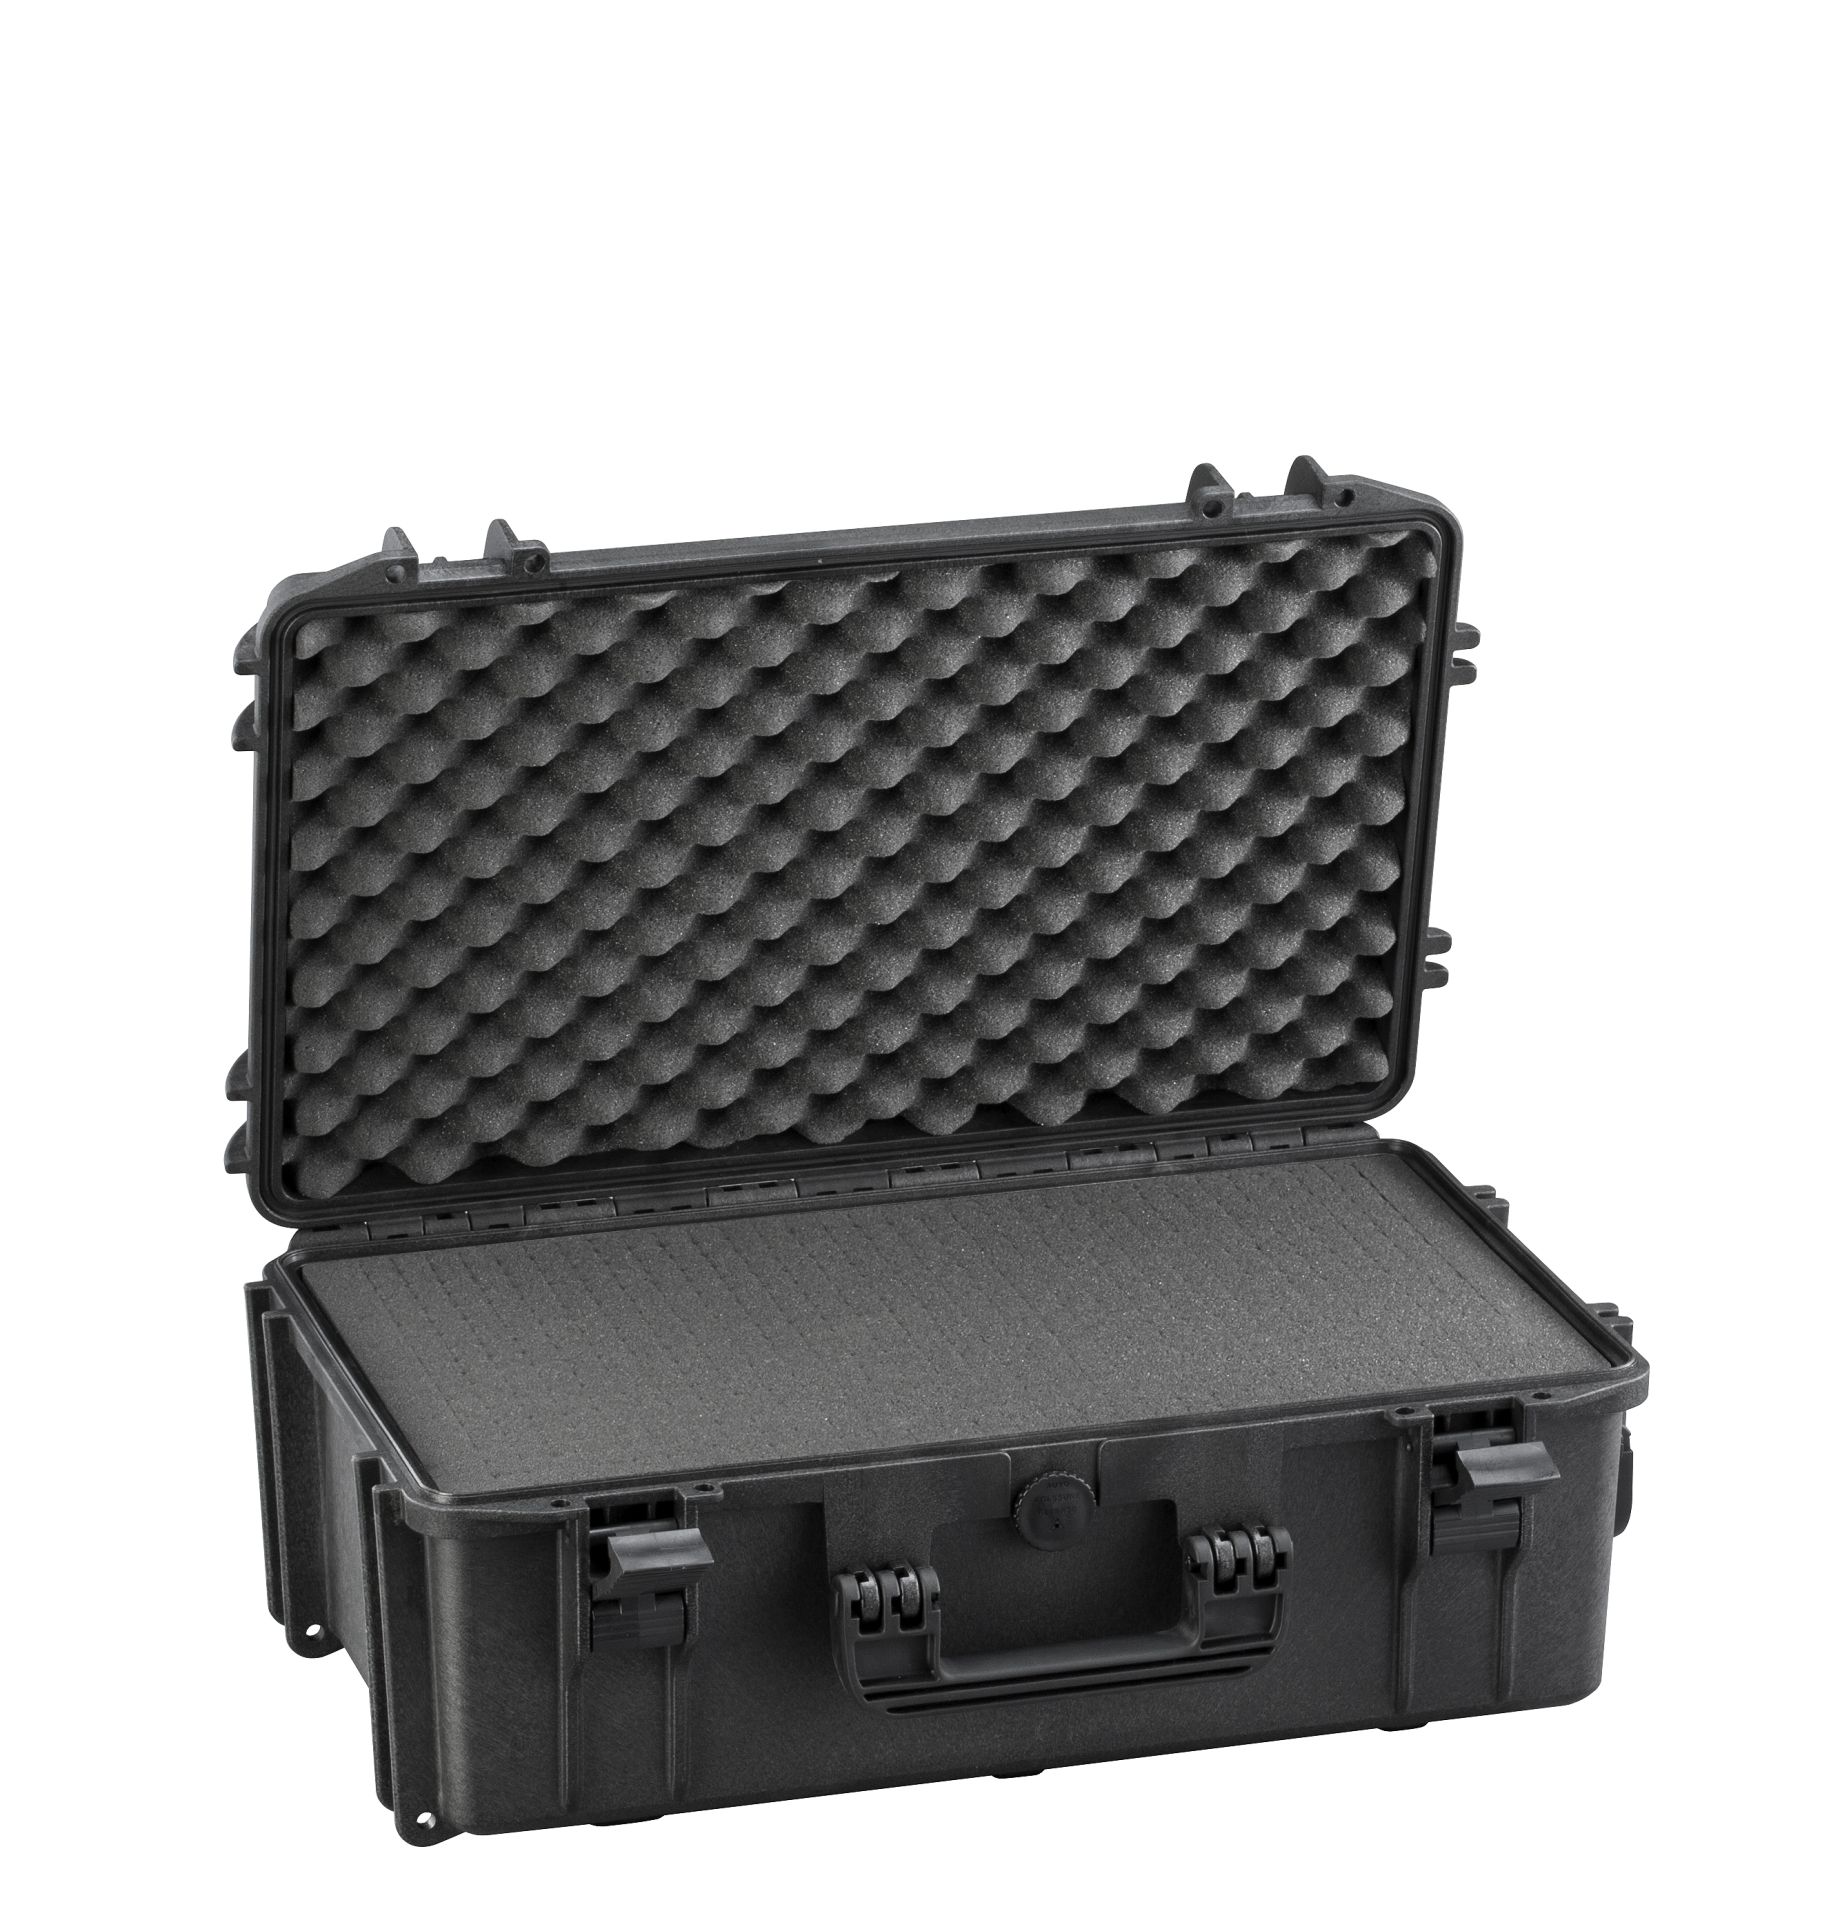 Rcps 290/2 | valise étanche 520 x 290 x 200 mm_0